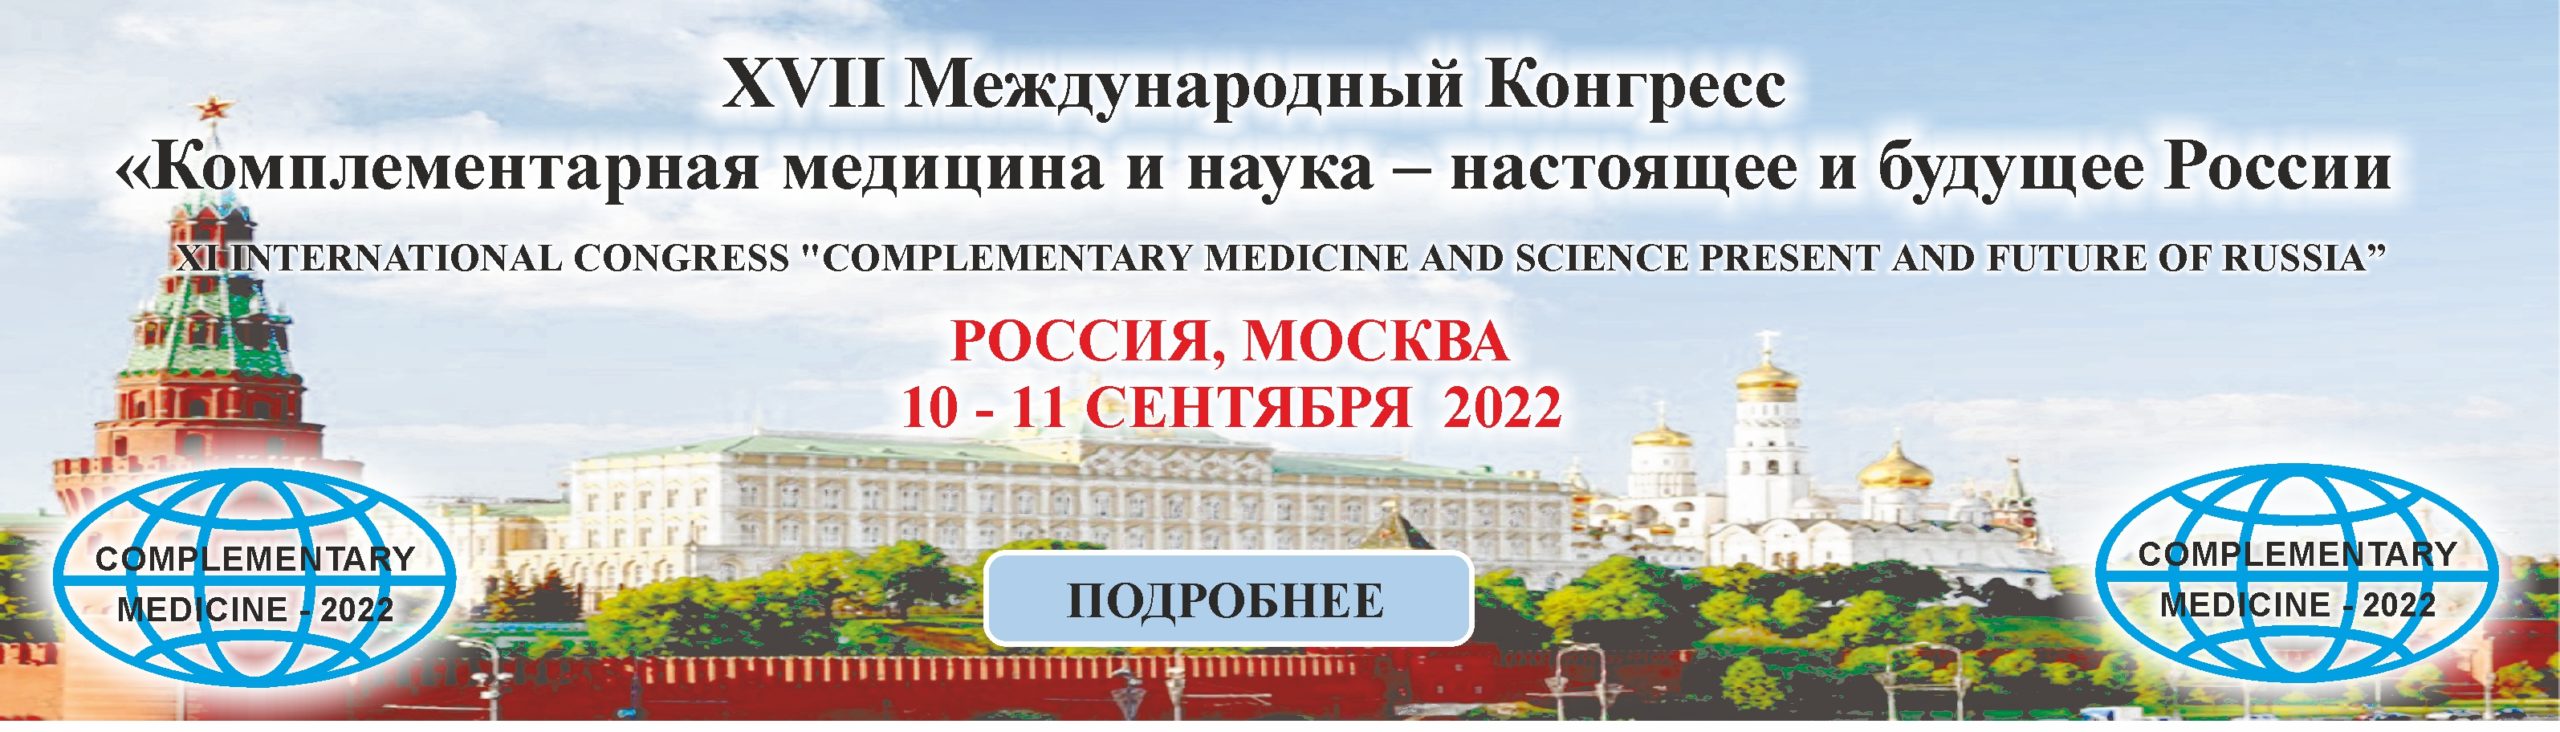 сайта ЗАГЛАВНАЯ scaled - XVII Международный конгресс «Комплементарная Медицина и наука  –  настоящее и будущее России»